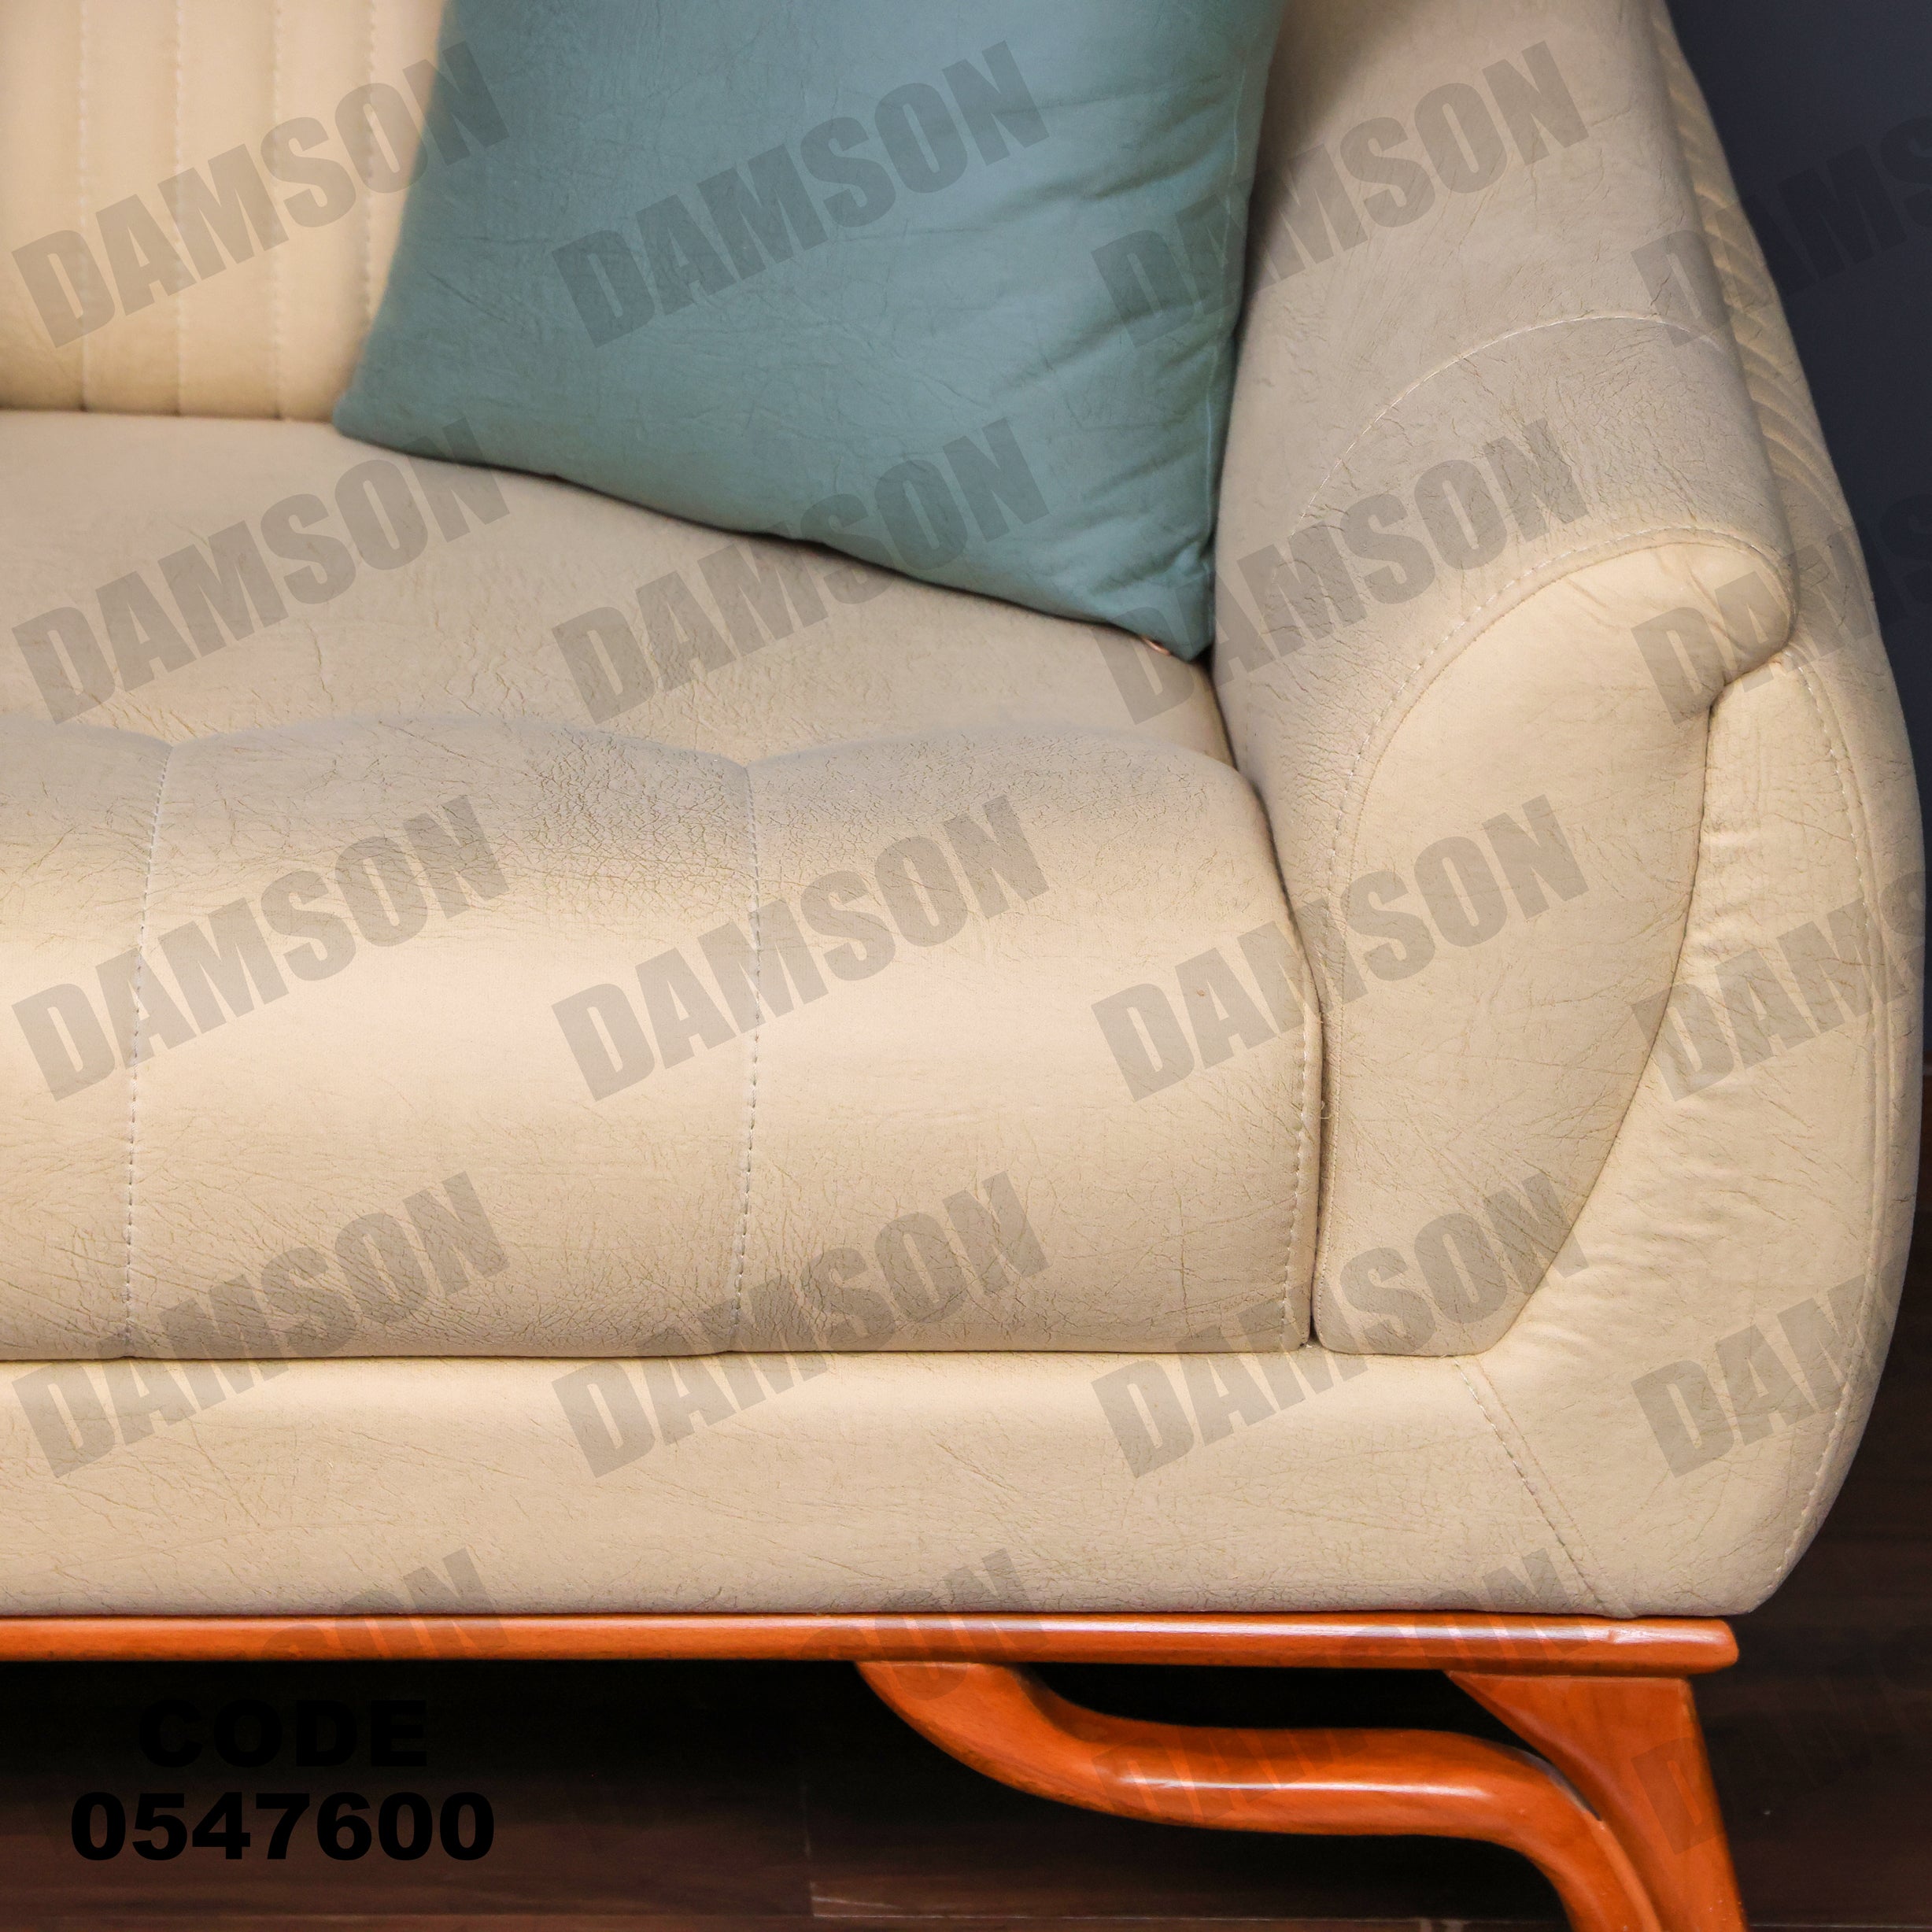 انترية 476 - Damson Furnitureانترية 476